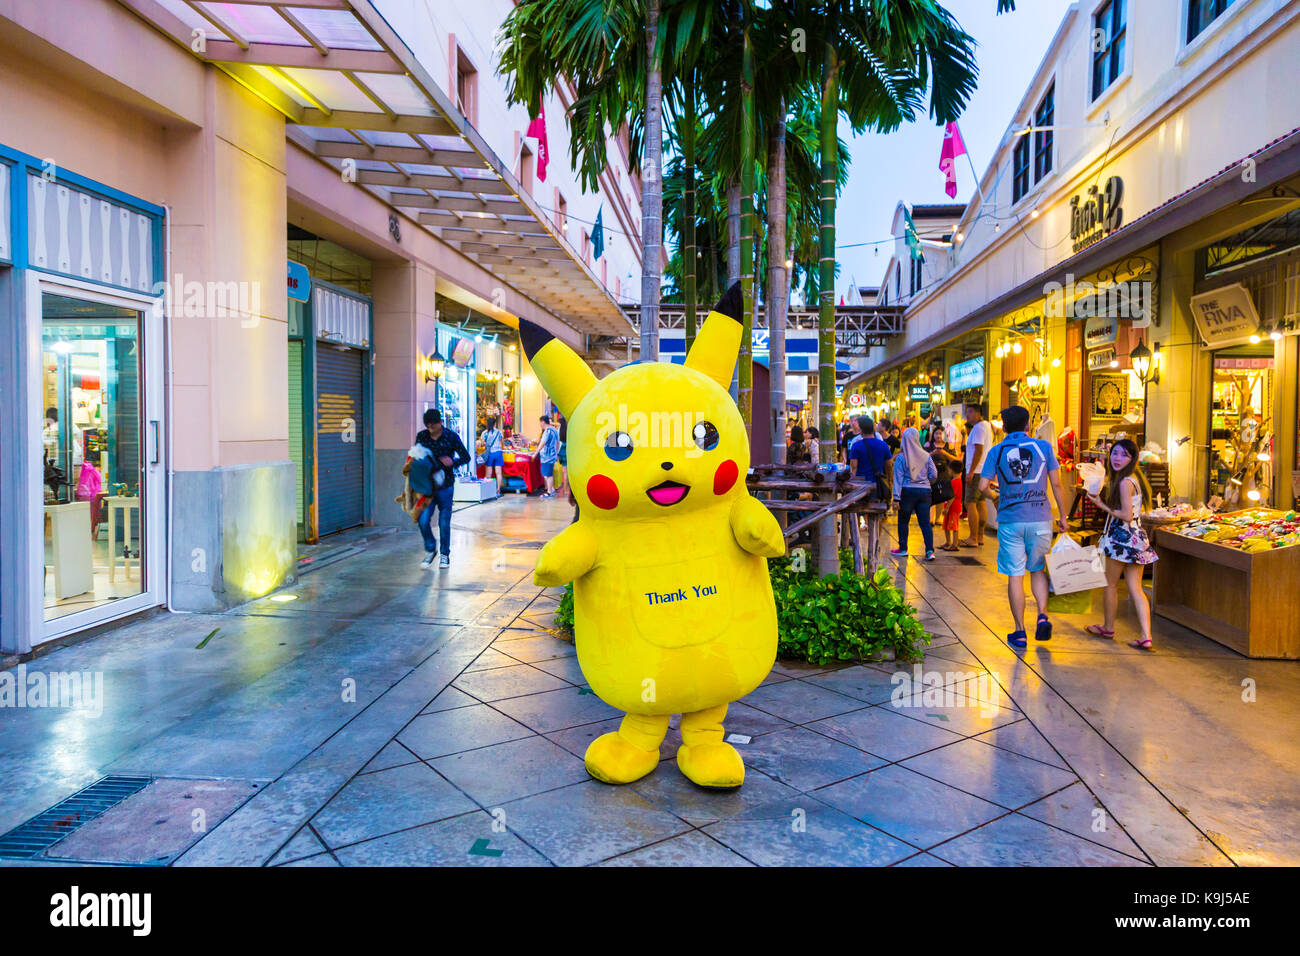 Bangkok, Thaïlande - 13 septembre 2017 - pokemon pikachu mascot signifie accueillir les clients à l'asiatique, Bangkok, Thaïlande sur une evenging de septembre 1 Banque D'Images